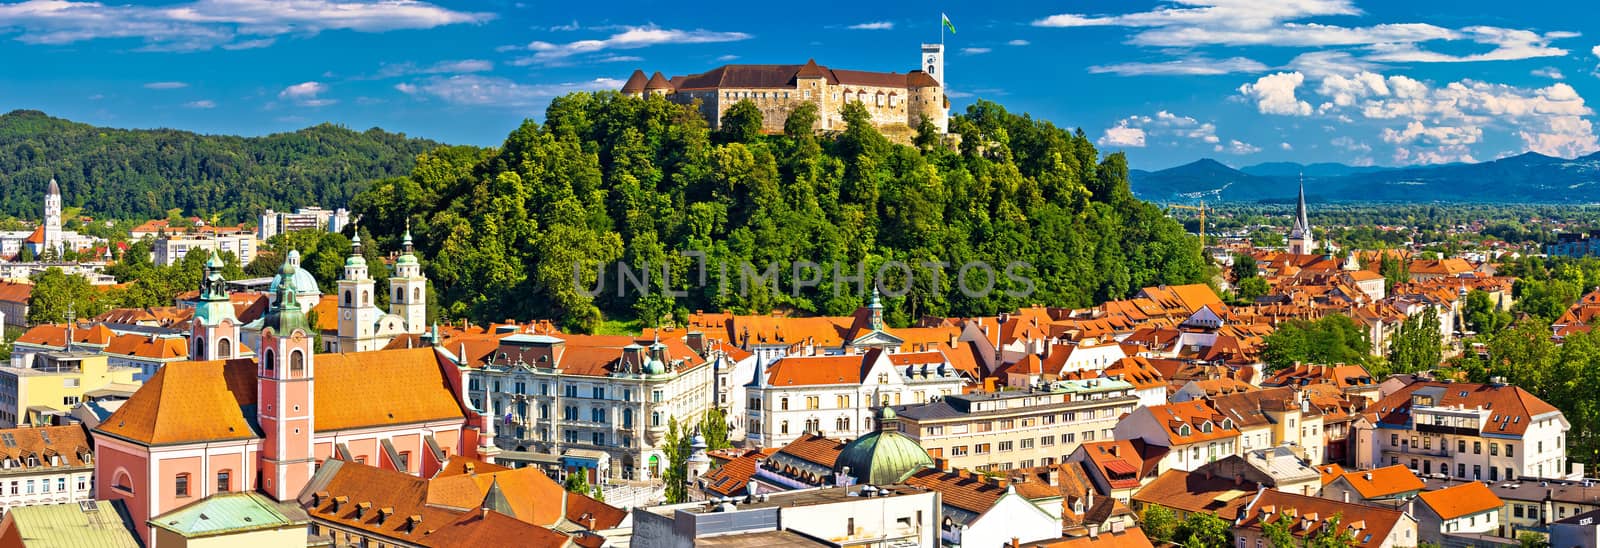 City of Ljubljana panoramic view by xbrchx